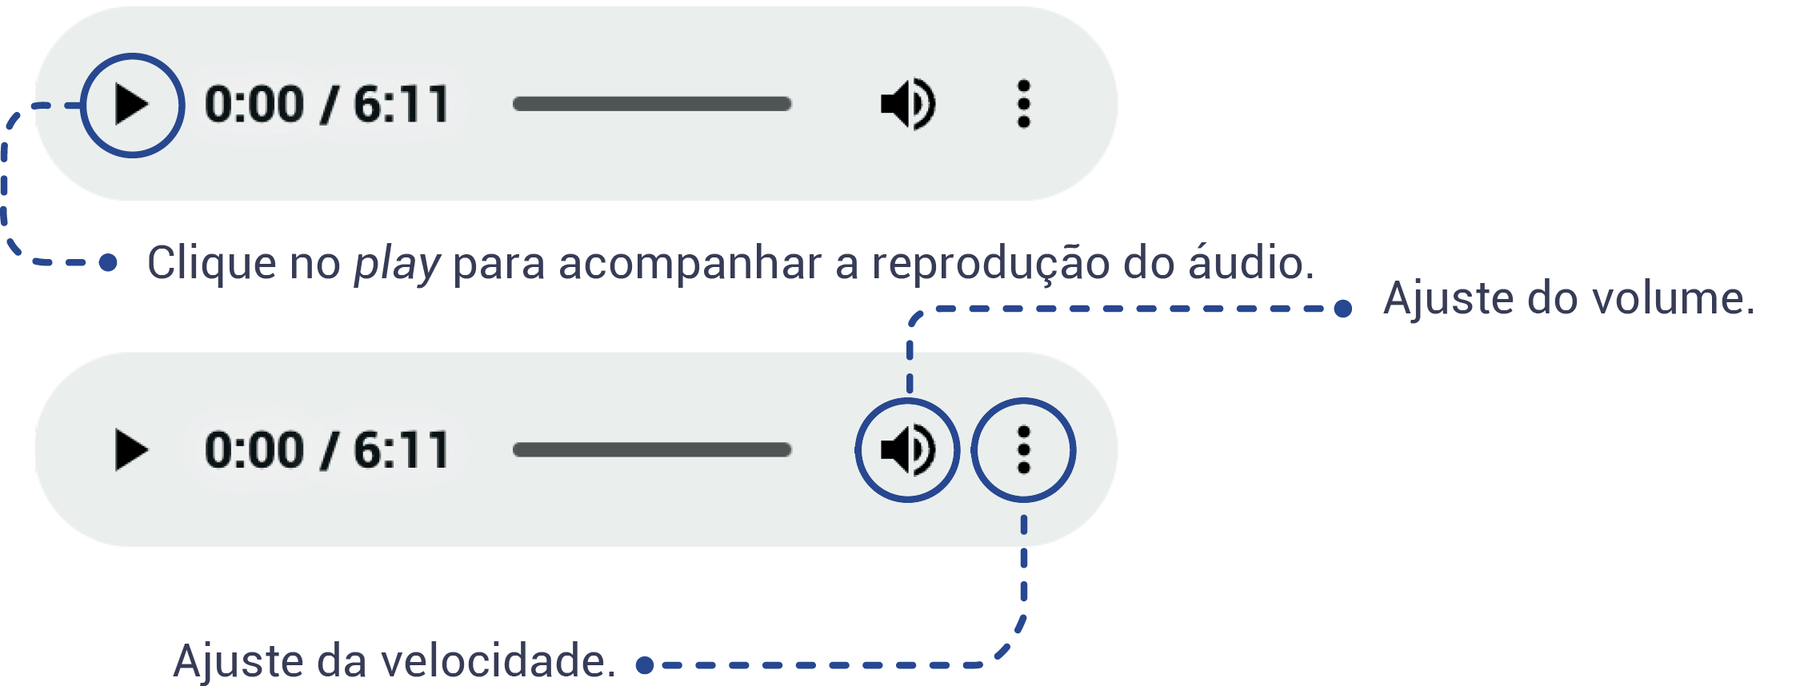 Esquema mostrando como deve ser feito a navegação do objeto digital de áudio, indicando que o ícone play deve ser clicado para acompanhar a reprodução do áudio, o ícone de som deve ser usado para o ajuste de volume e o ícone com três pontos alinhados verticalmente serve para o ajuste da velocidade do áudio.